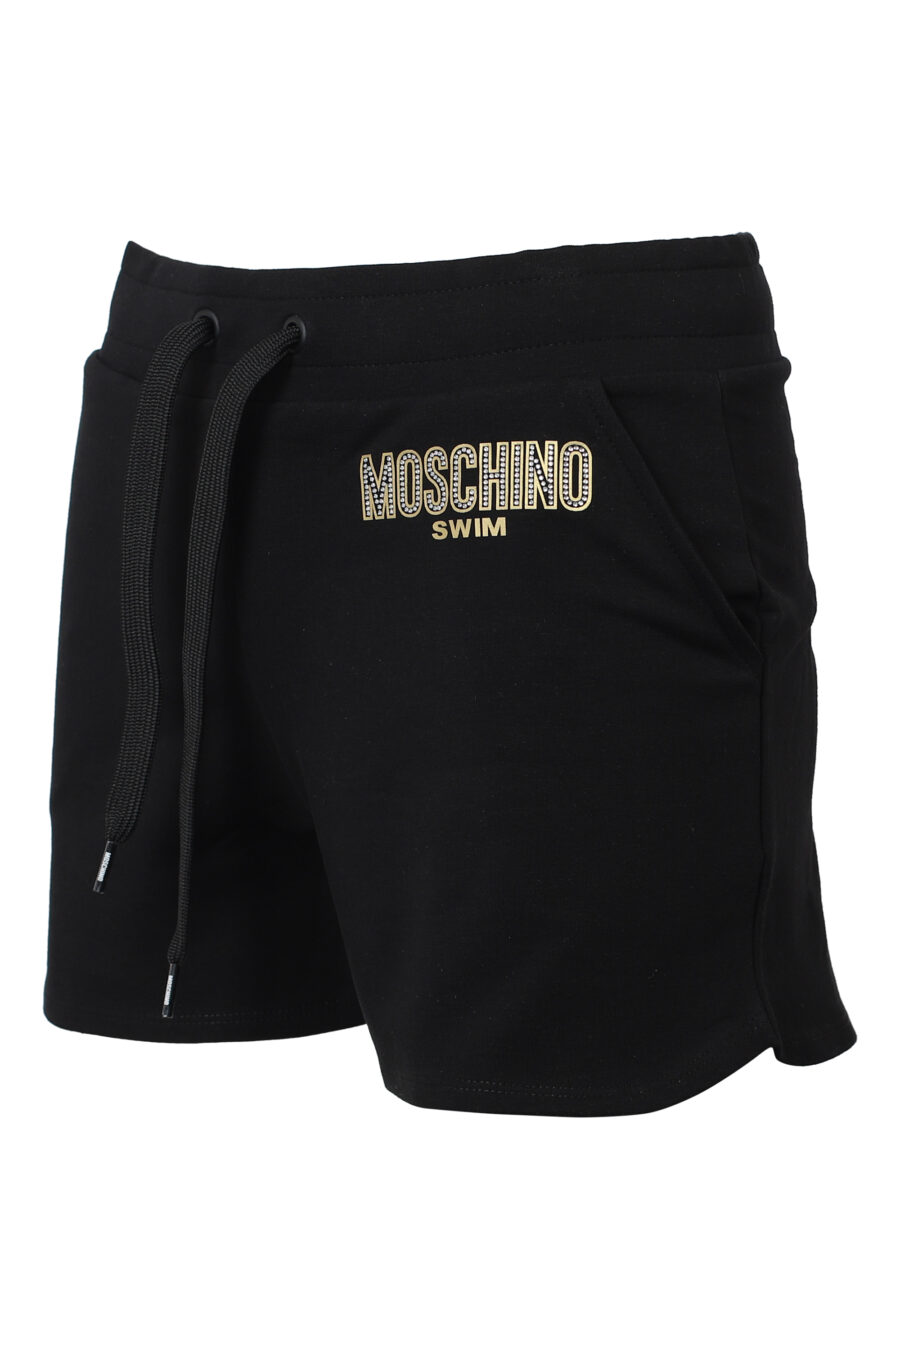 Schwarze Shorts mit strassbesetztem Logo - IMG 9845